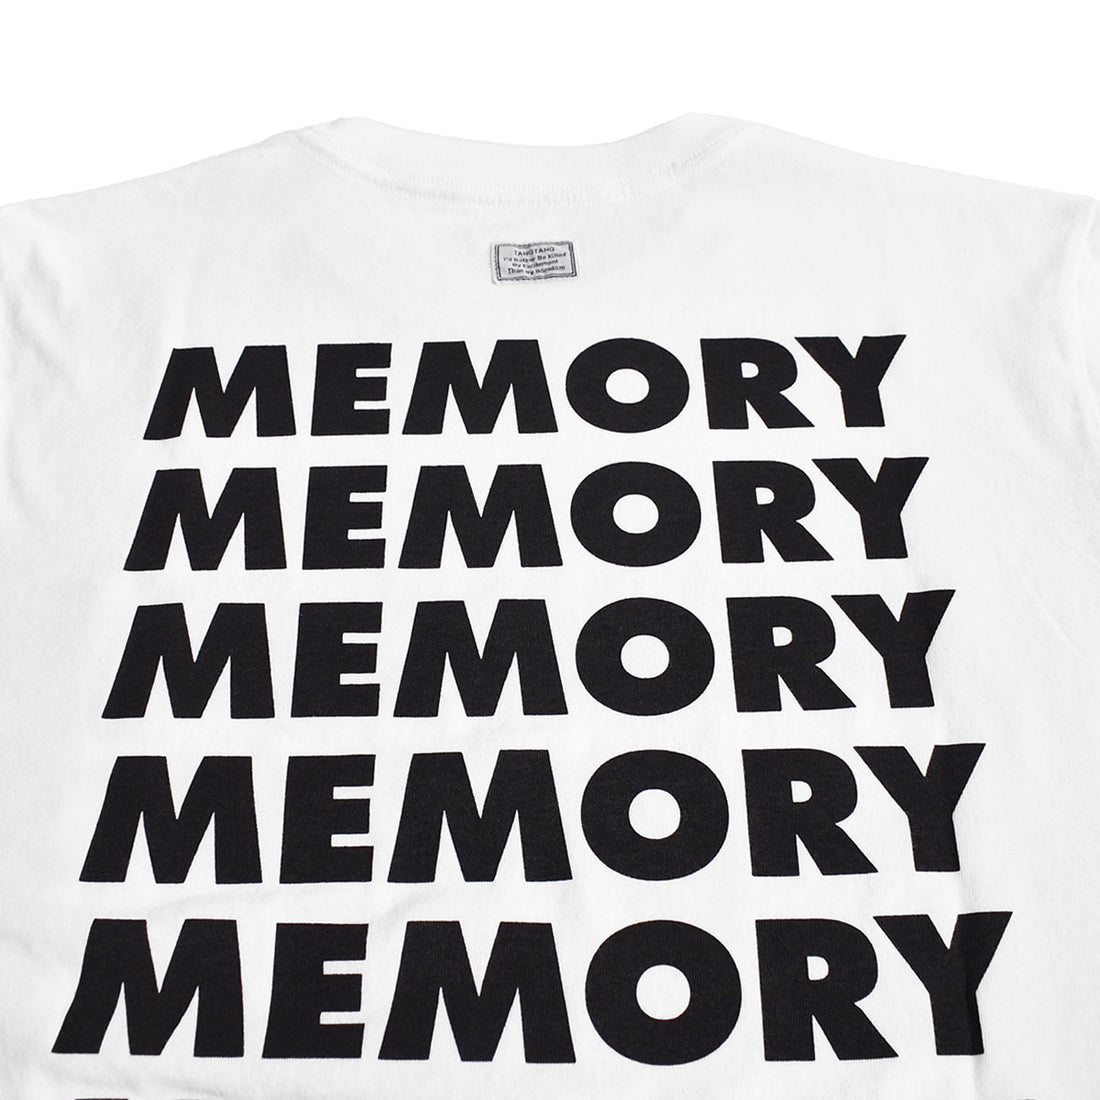 [TANGTANG]AIN'T MEMORY/WHITE(T-6150)